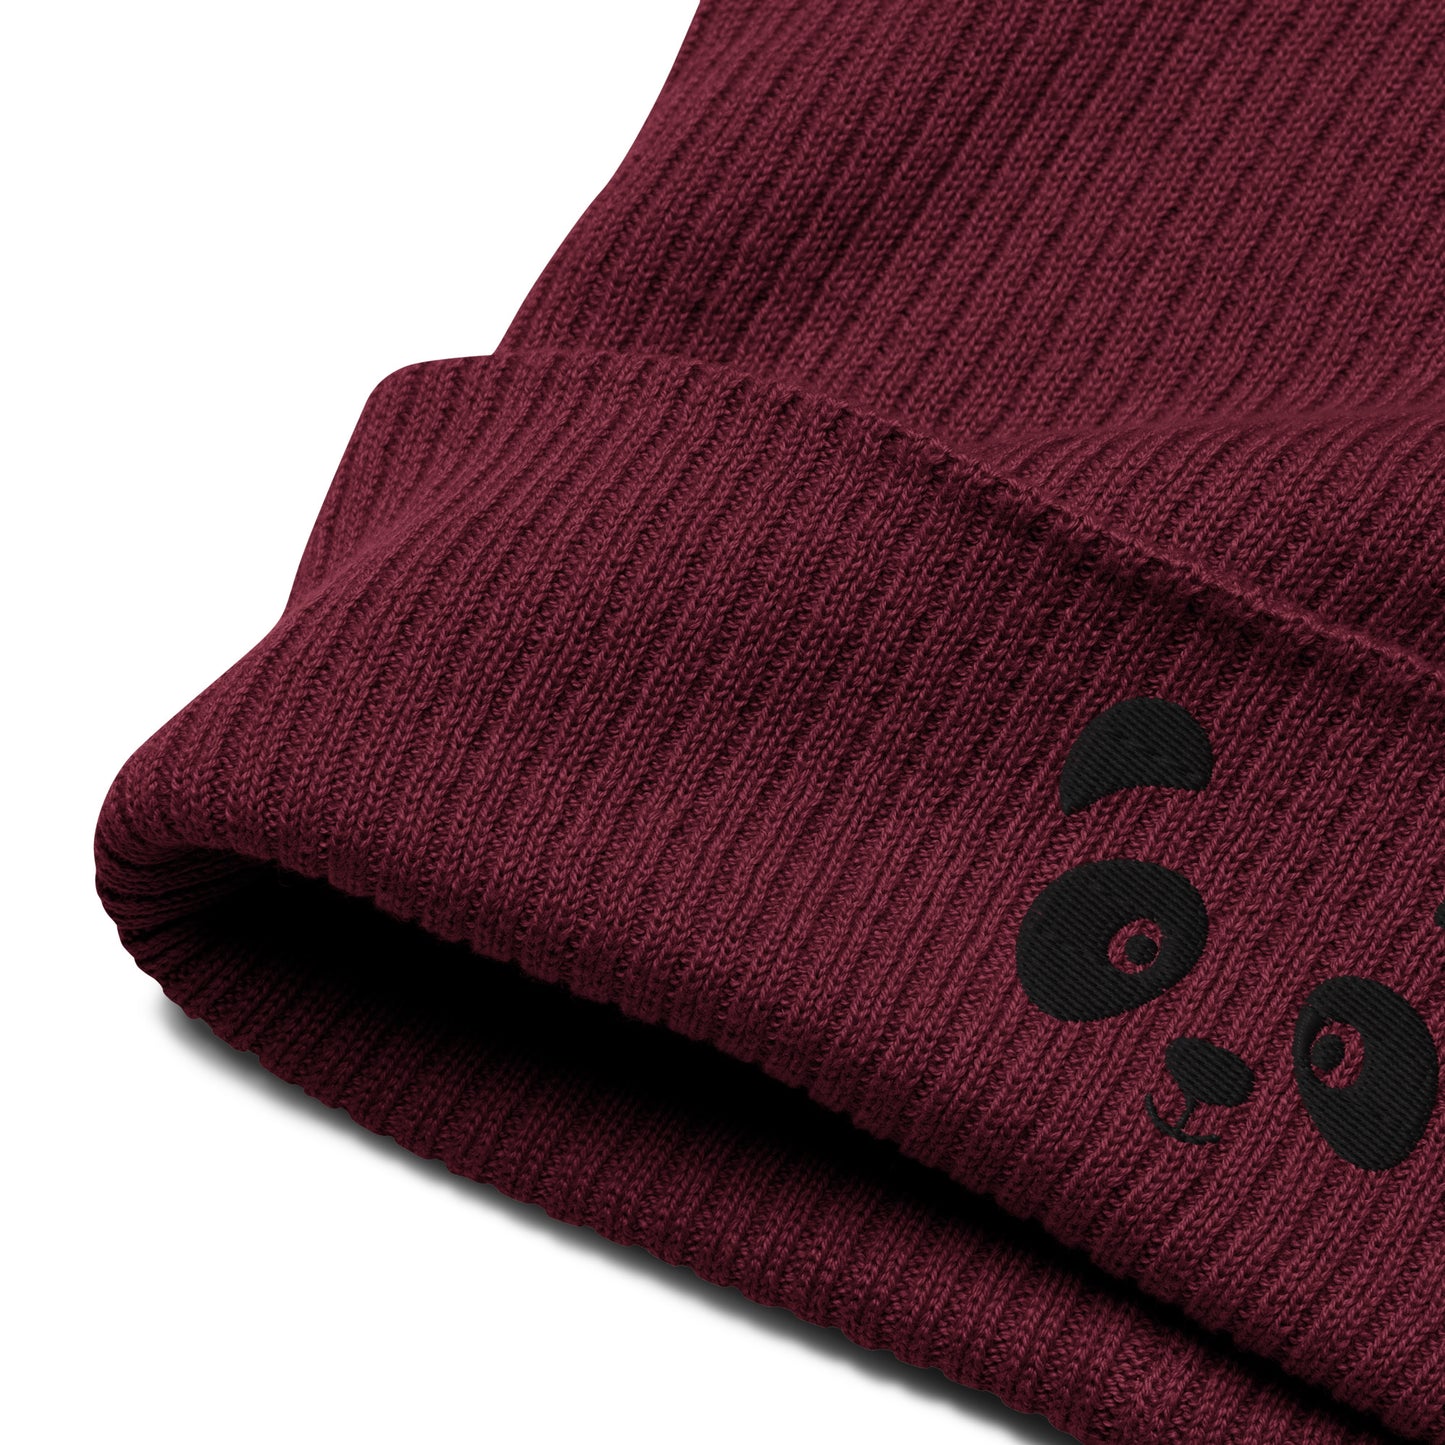 Schwarze gerippte Beanie-Mütze aus Bio-Baumwolle mit Pandagesicht-Stickerei